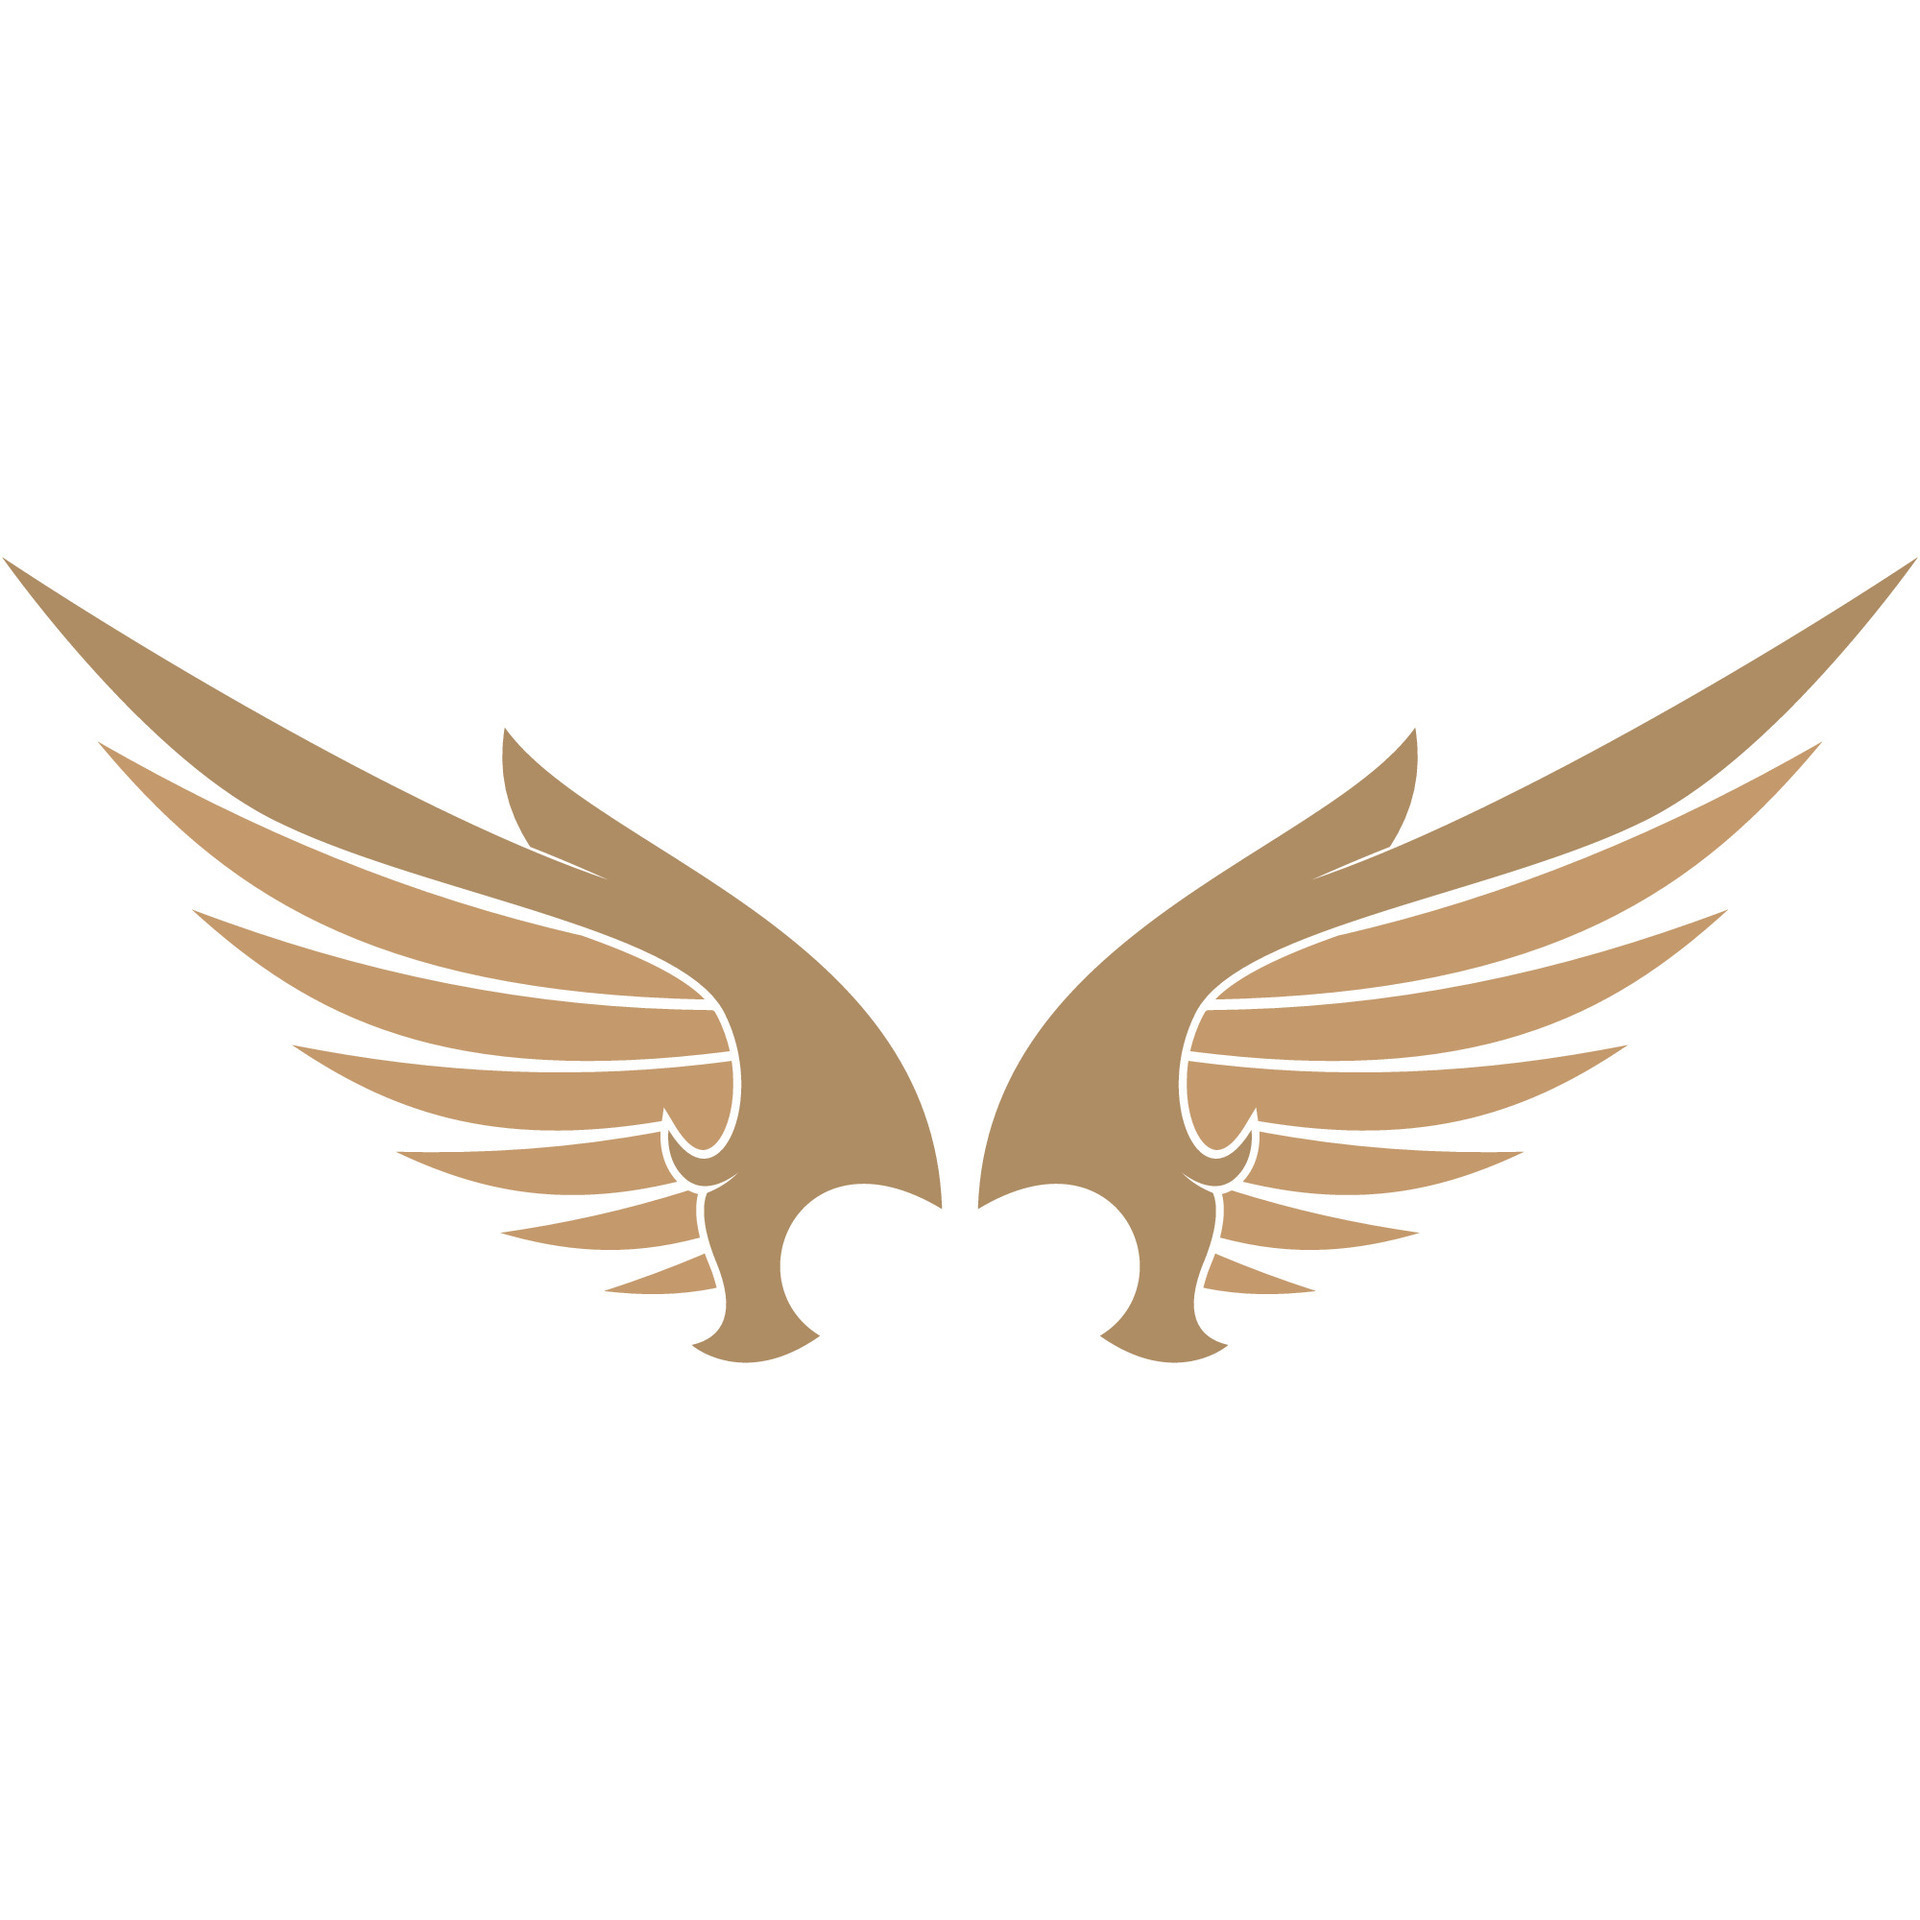 Bird wings illustration logo. 27133805 Vector Art at Vecteezy